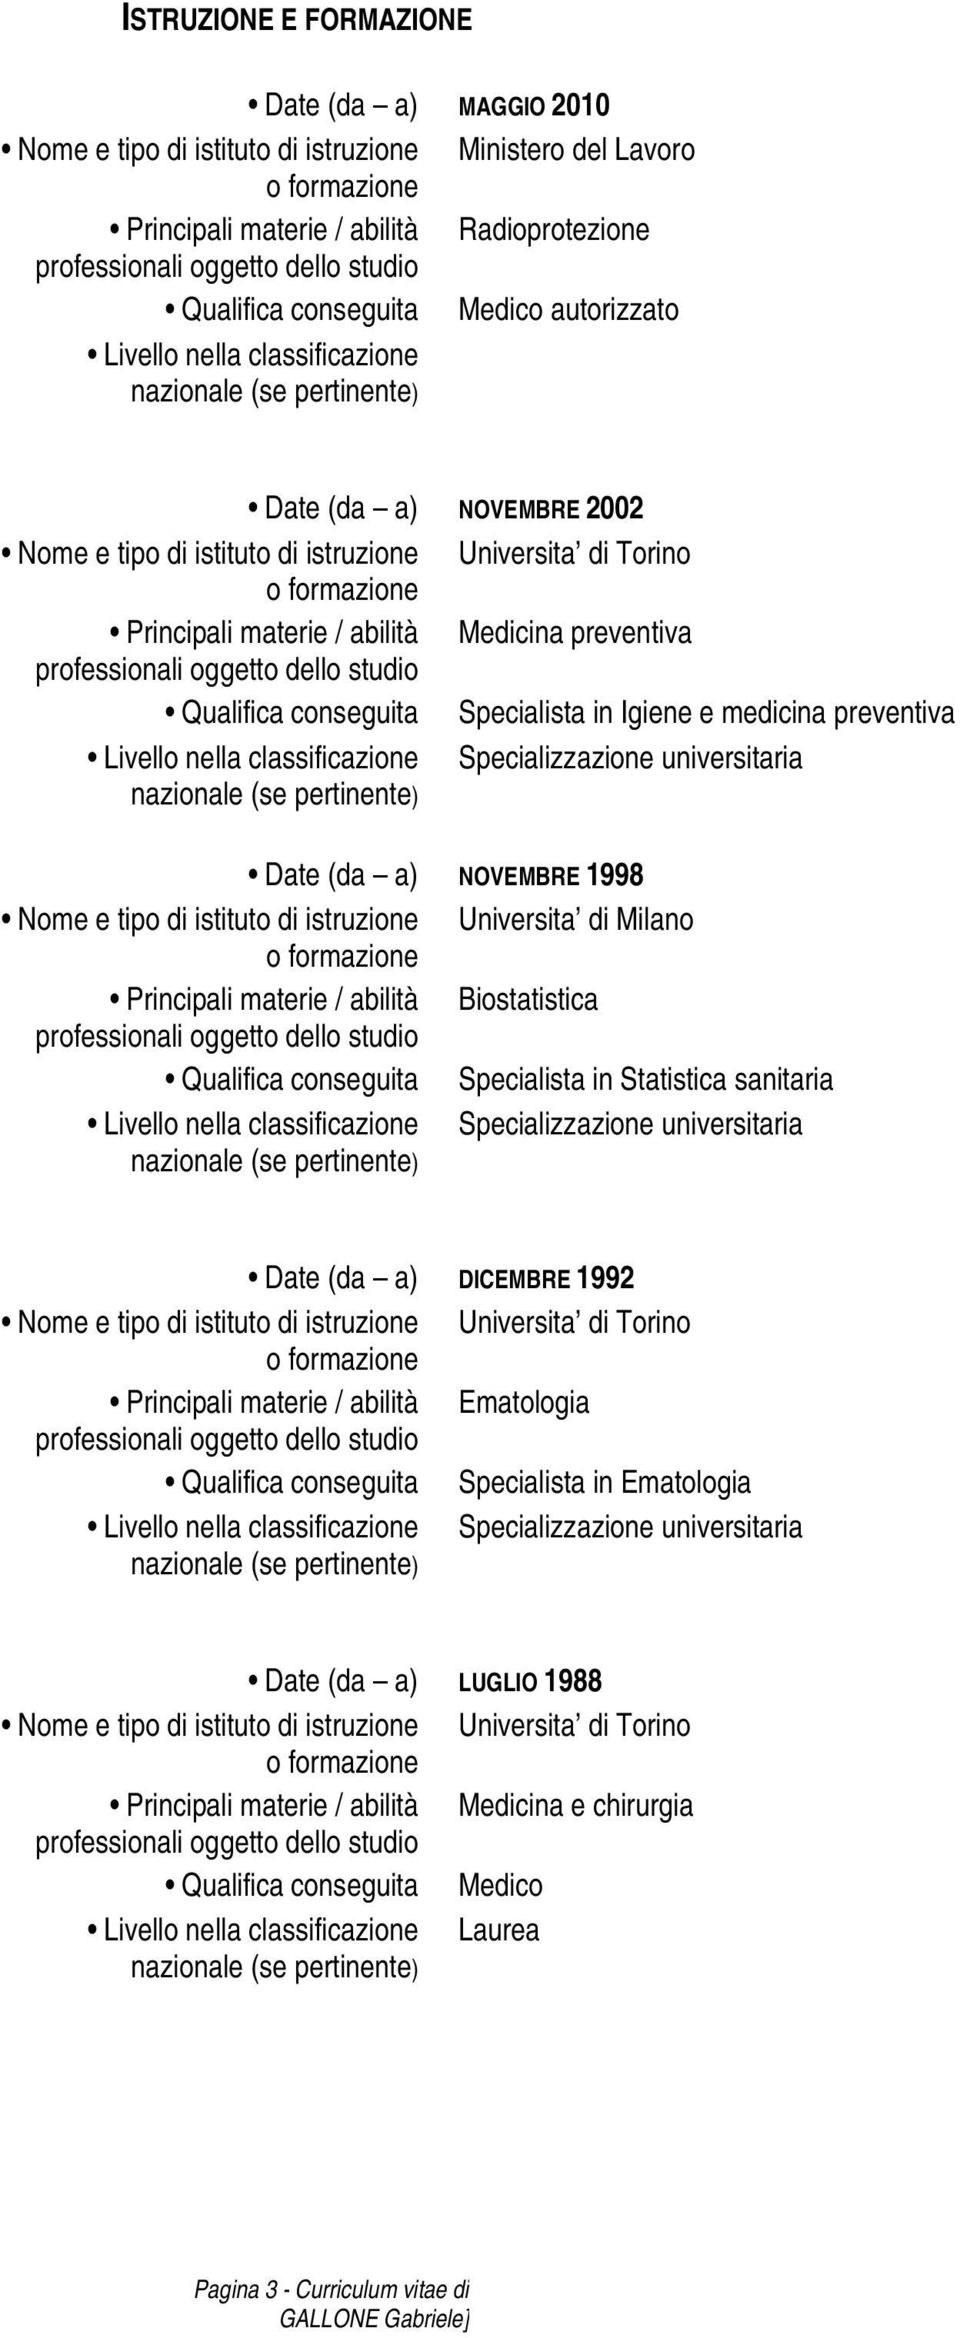 e medicina preventiva Livello nella classificazione Specializzazione universitaria Date (da a) NOVEMBRE 1998 Nome e tipo di istituto di istruzione Universita di Milano Principali materie / abilità